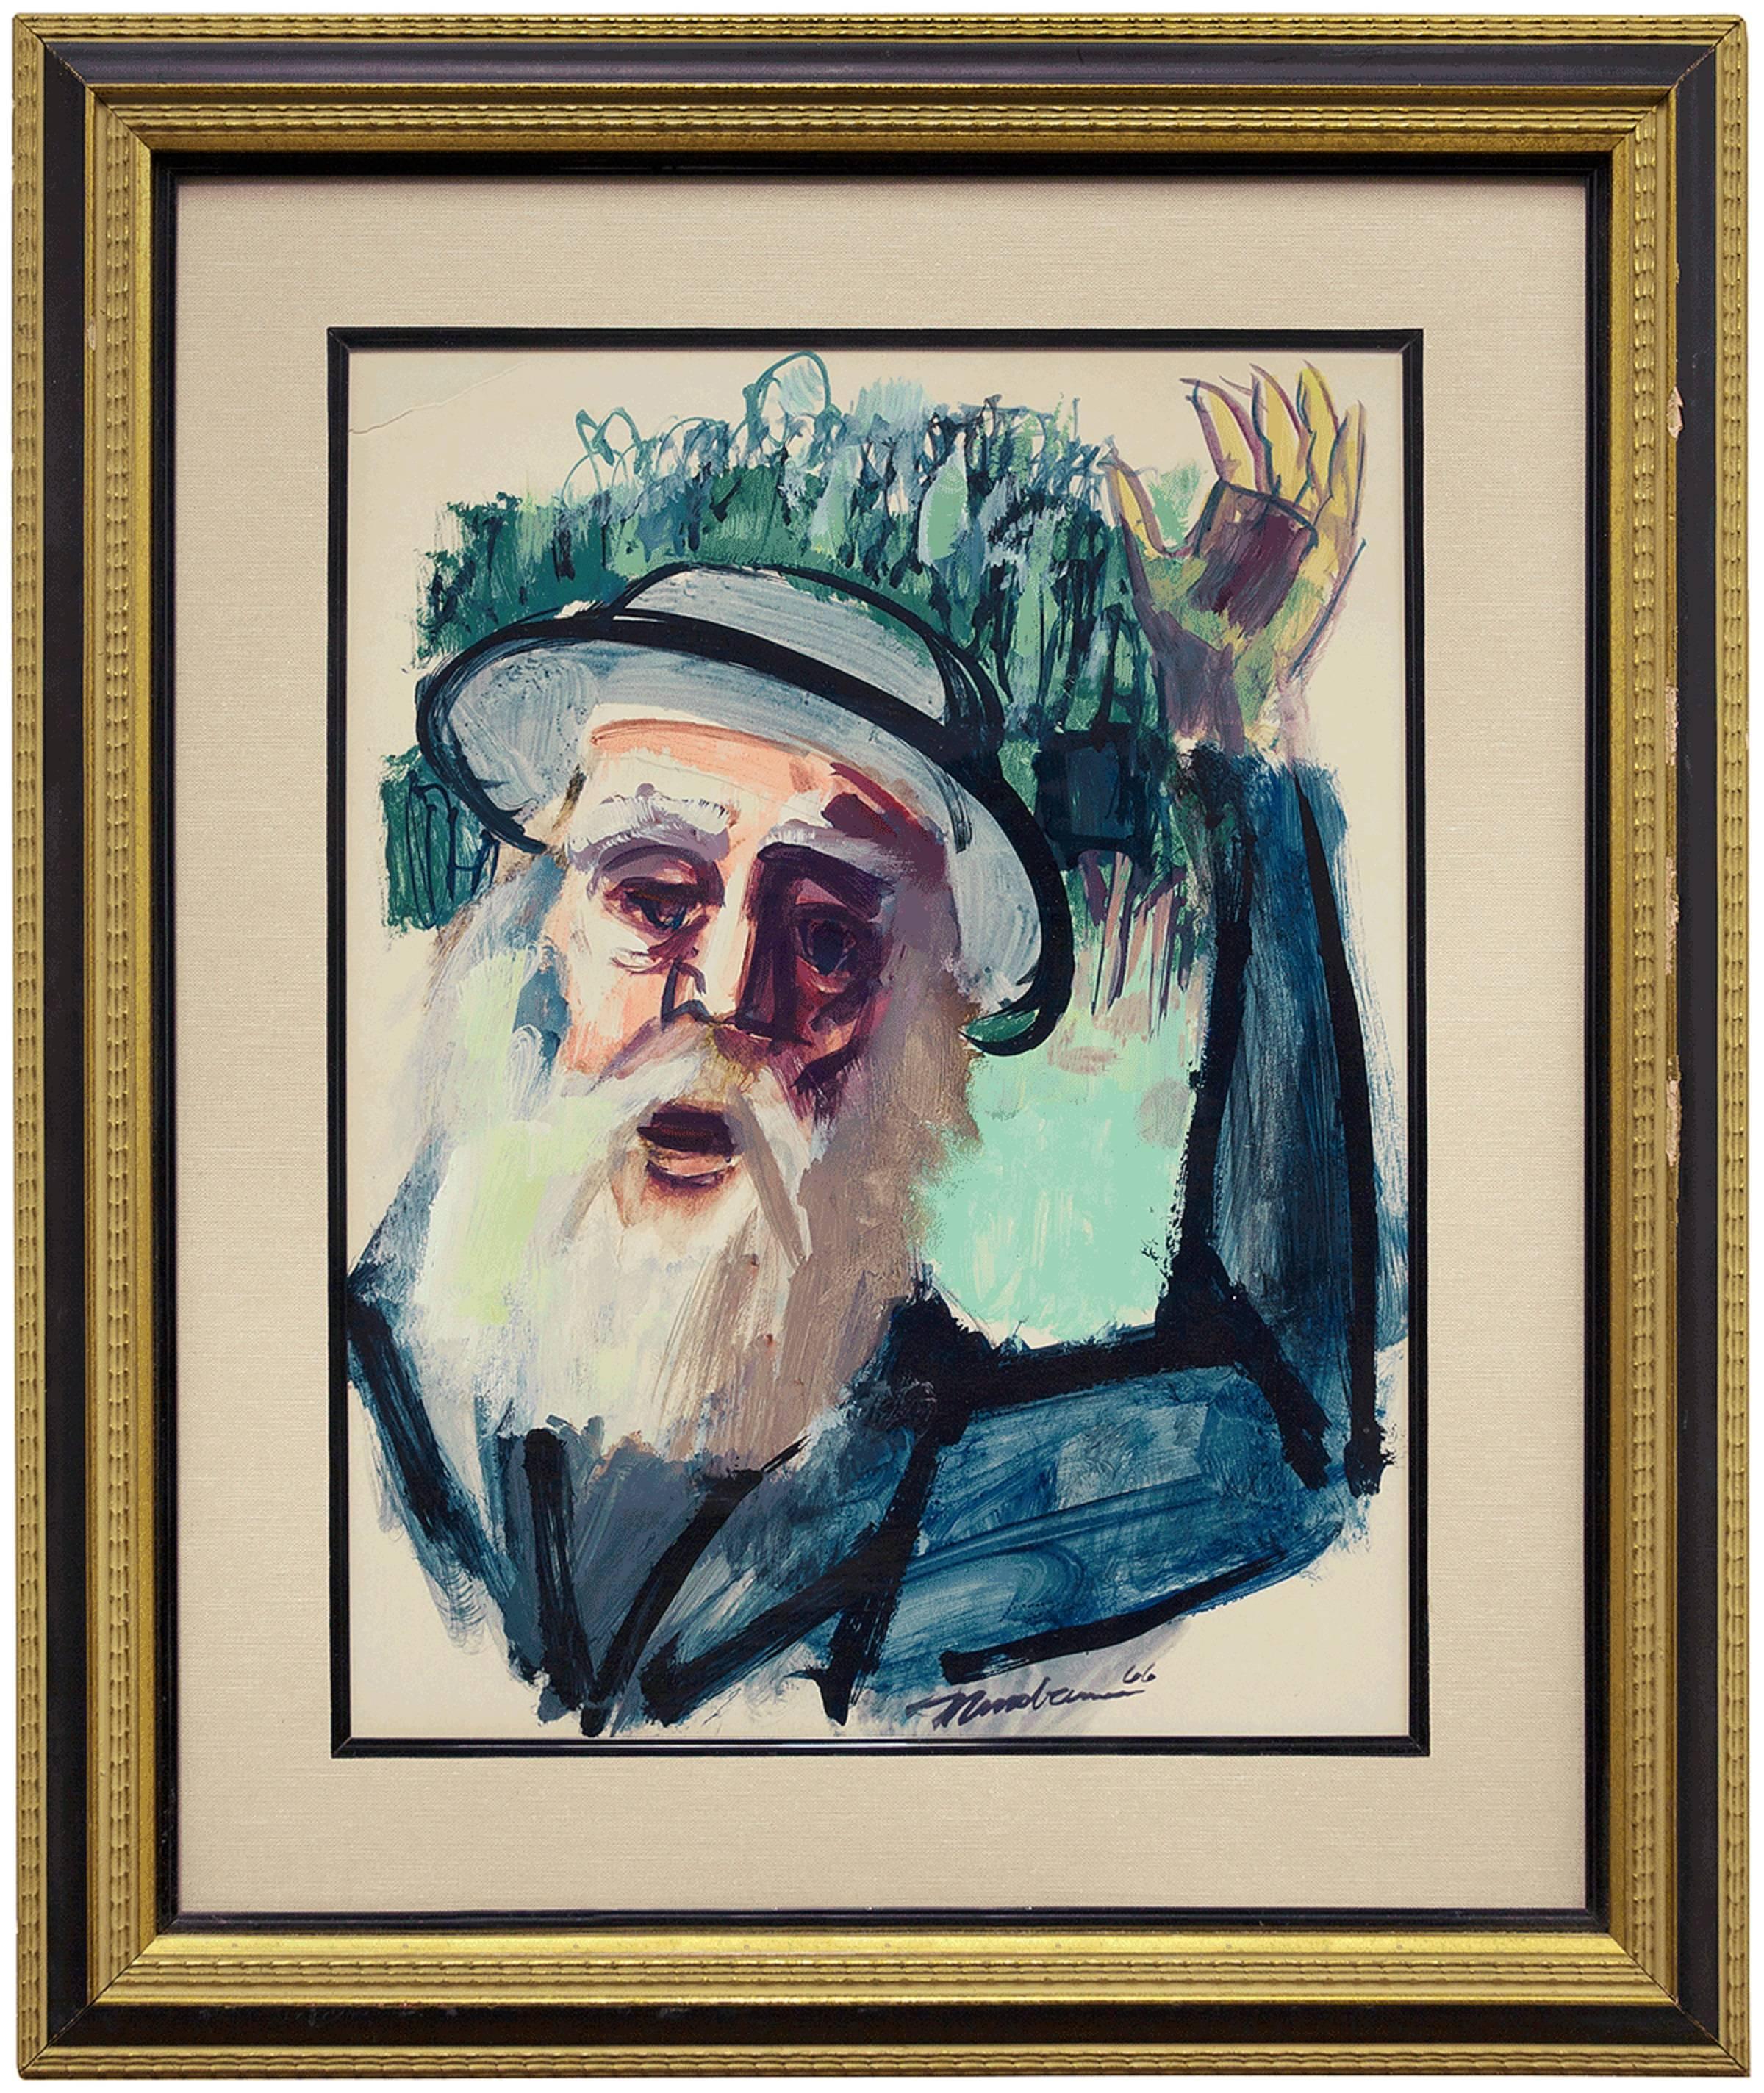 Chassidischer Rabbiner, Judaica, expressionistisches Gemälde